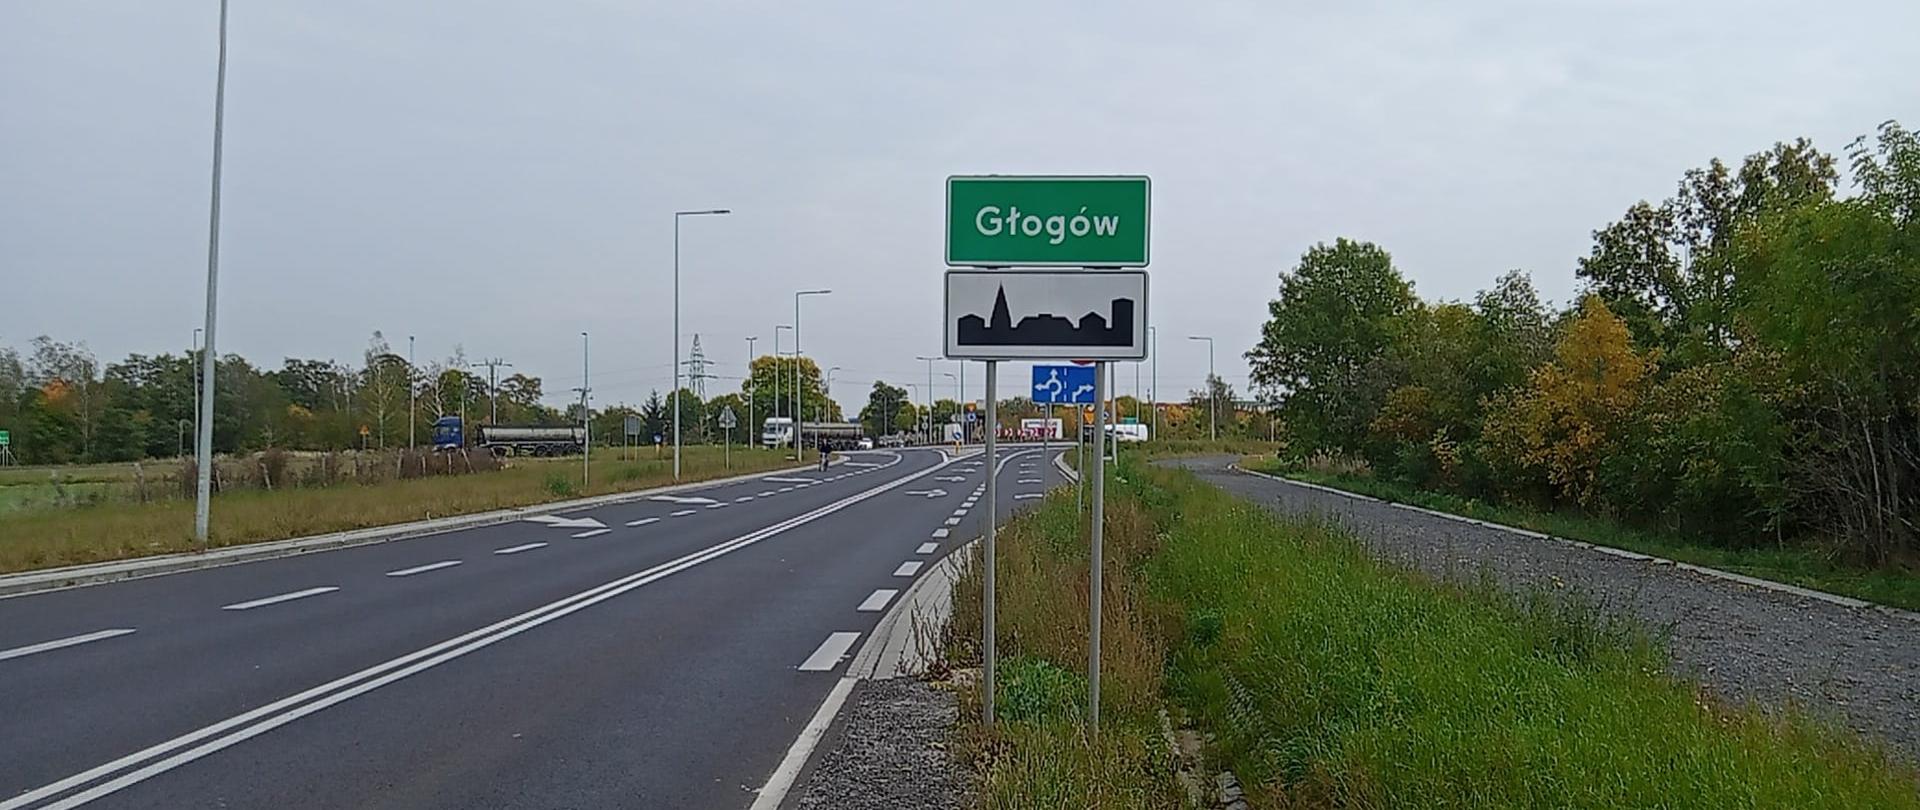 na zdjęciu widoczna droga oraz tablica z nazwą miejscowości Głogów 